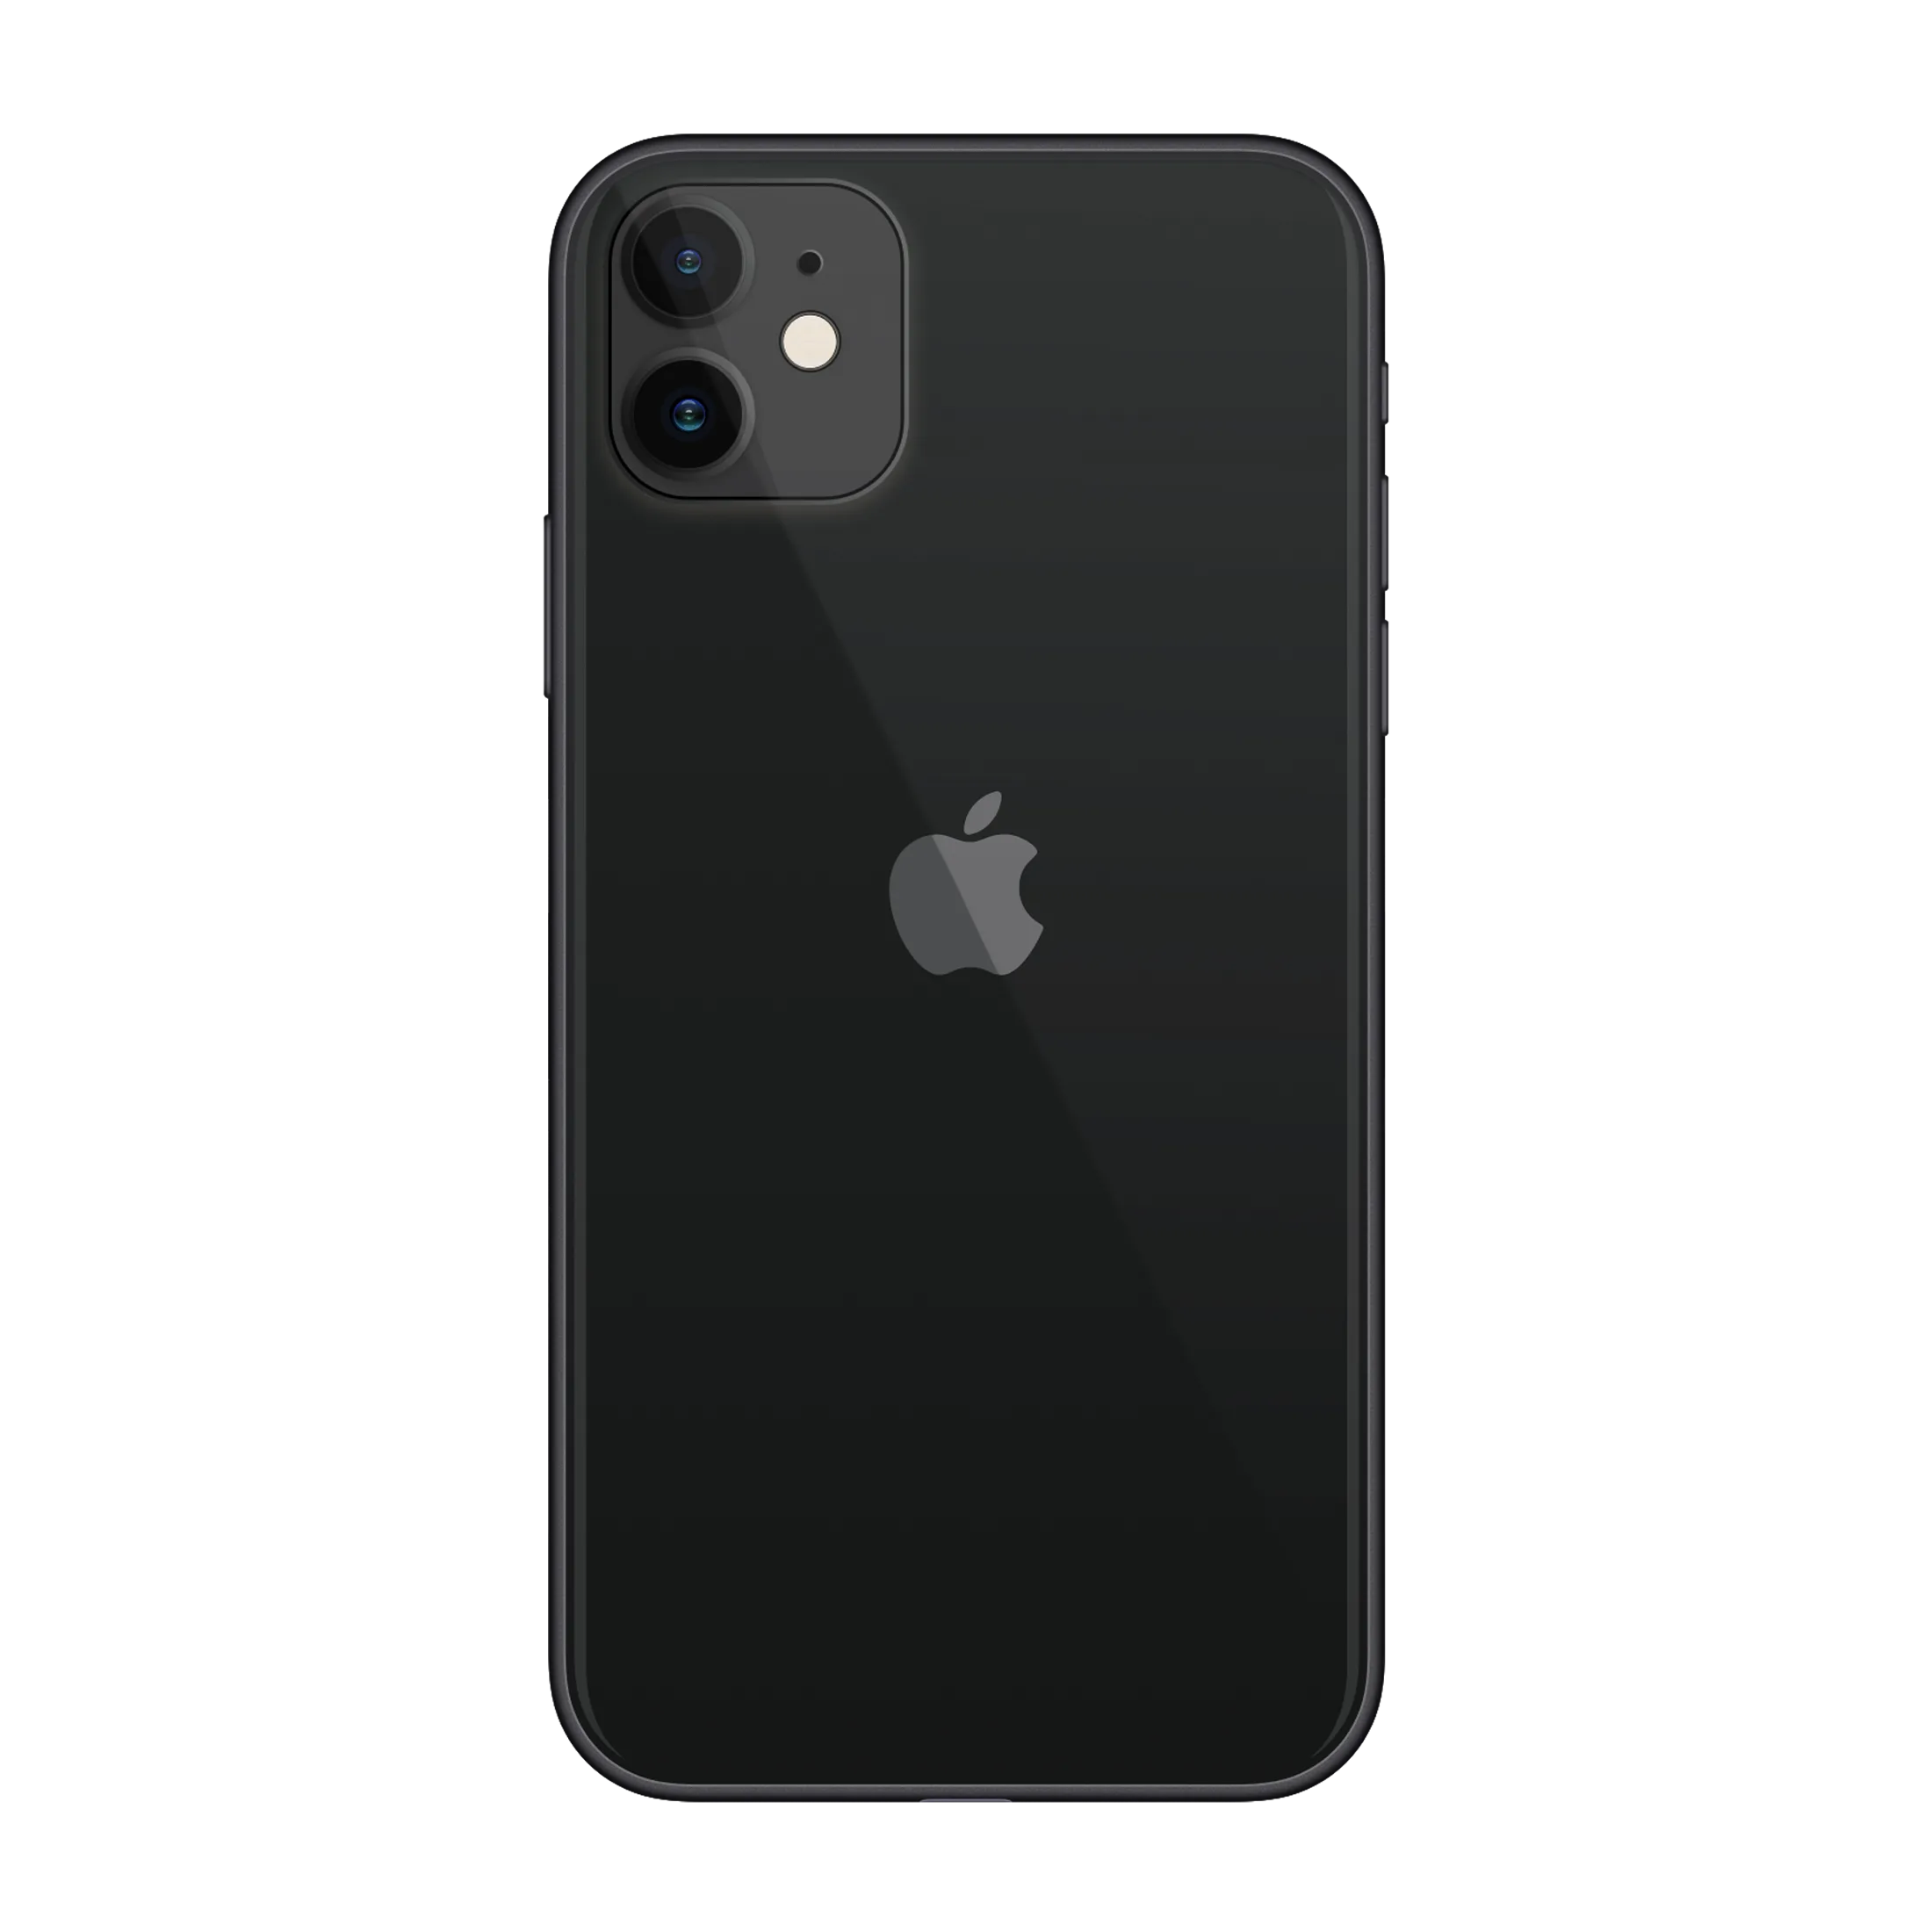 Вход айфон 11. Apple iphone 11 64 ГБ черный. Apple iphone 11 64gb Black. Apple iphone 11 128gb Black. Iphone 11, 64 ГБ, чёрный.